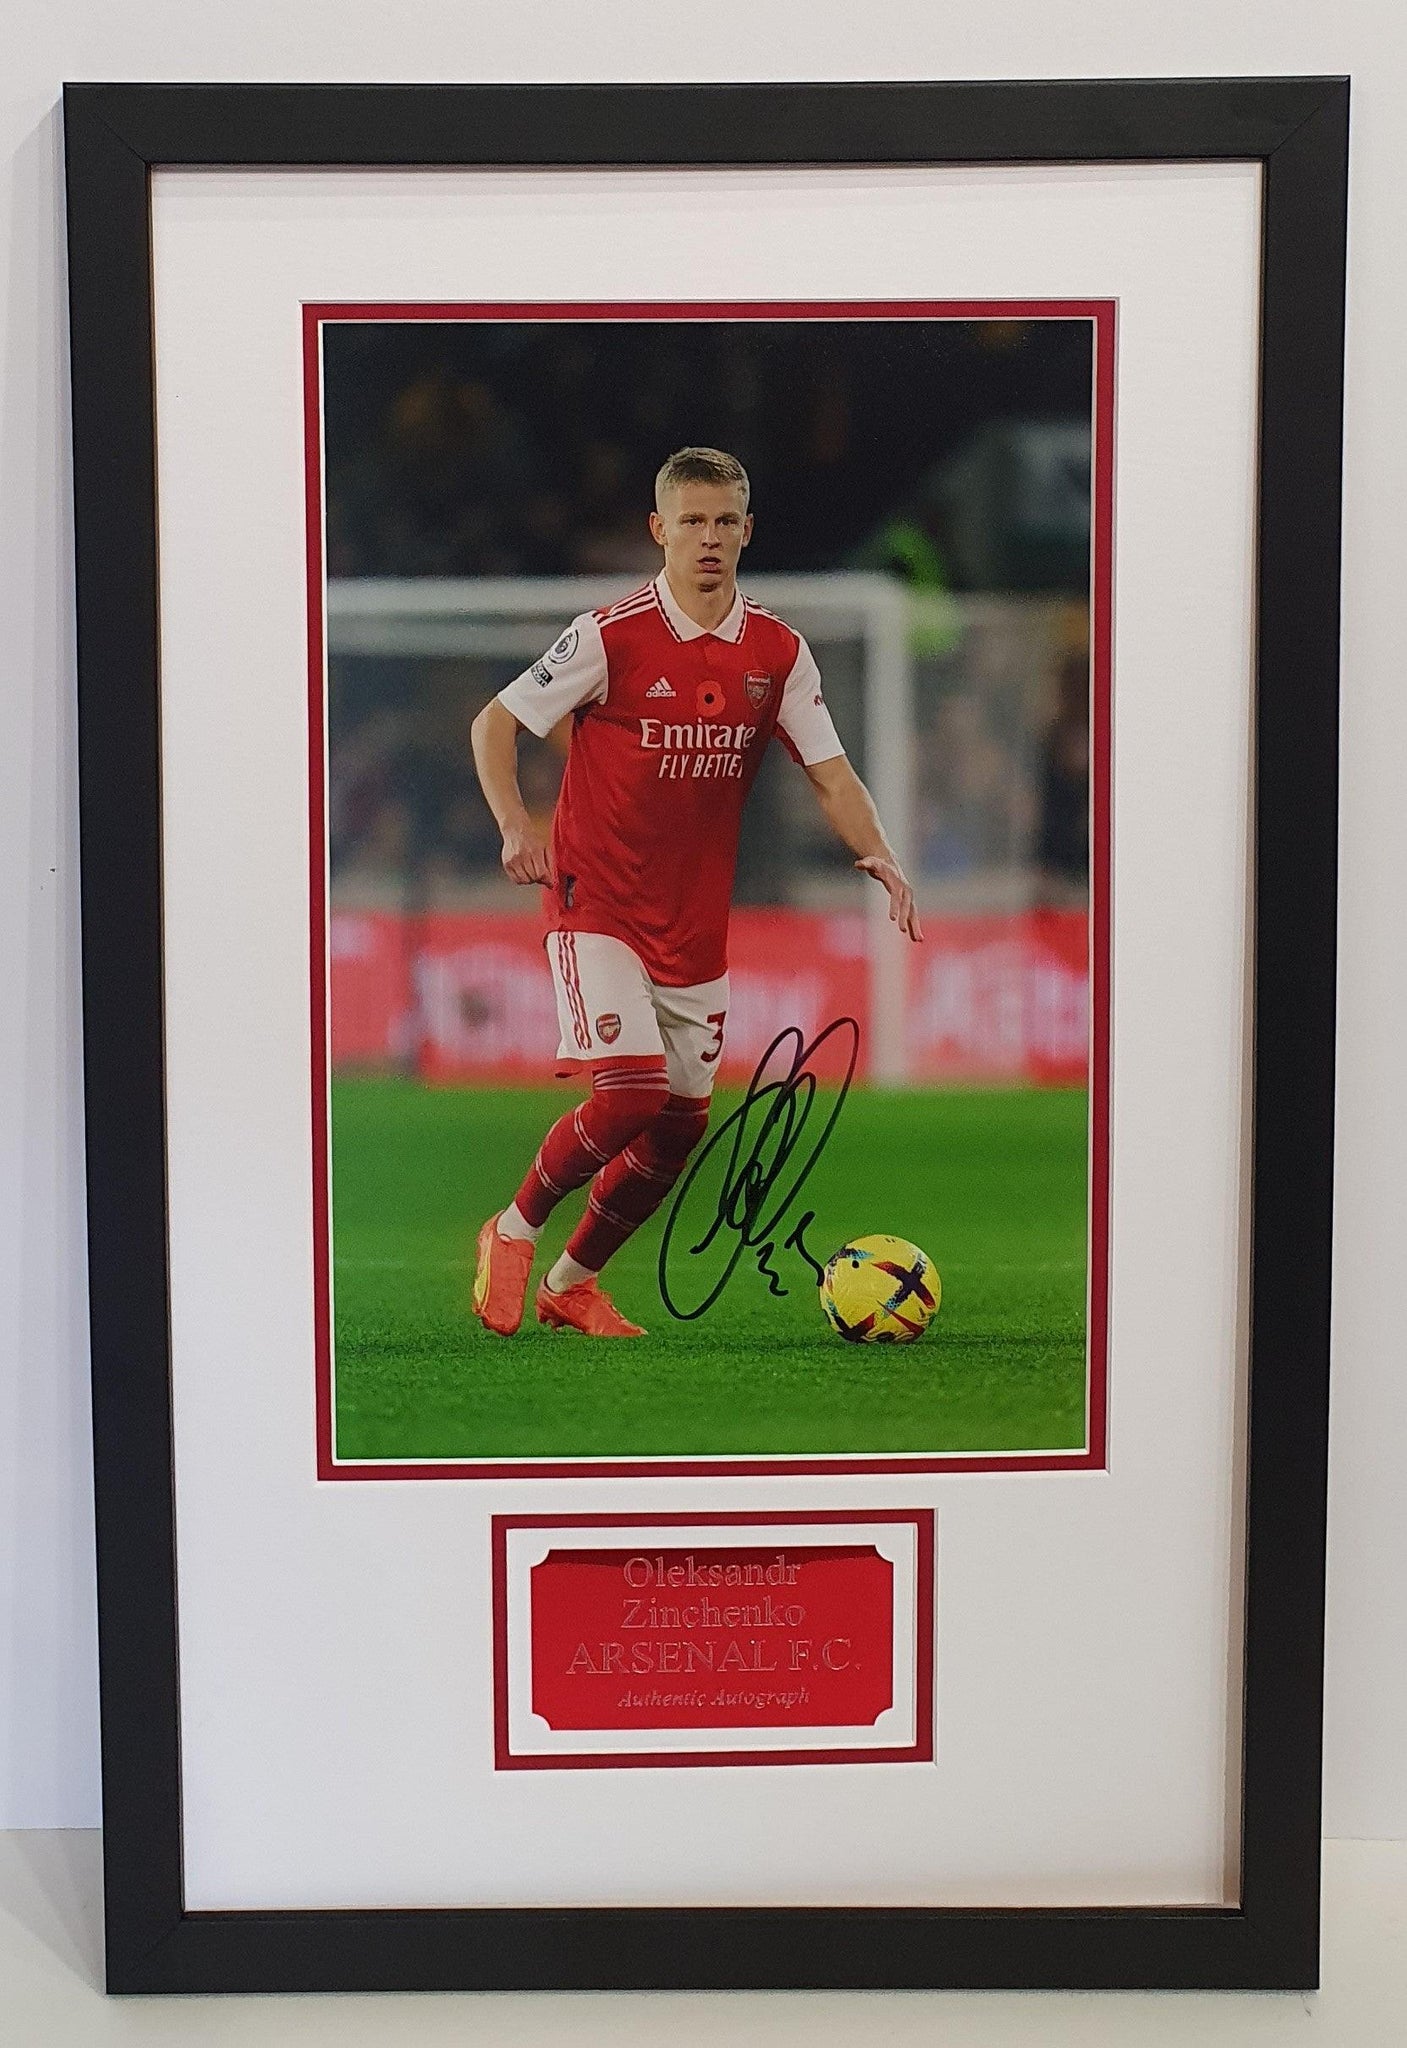 Oleksandr Zinchenko Signed Arsenal Photo Framed. - Darling Picture Framing